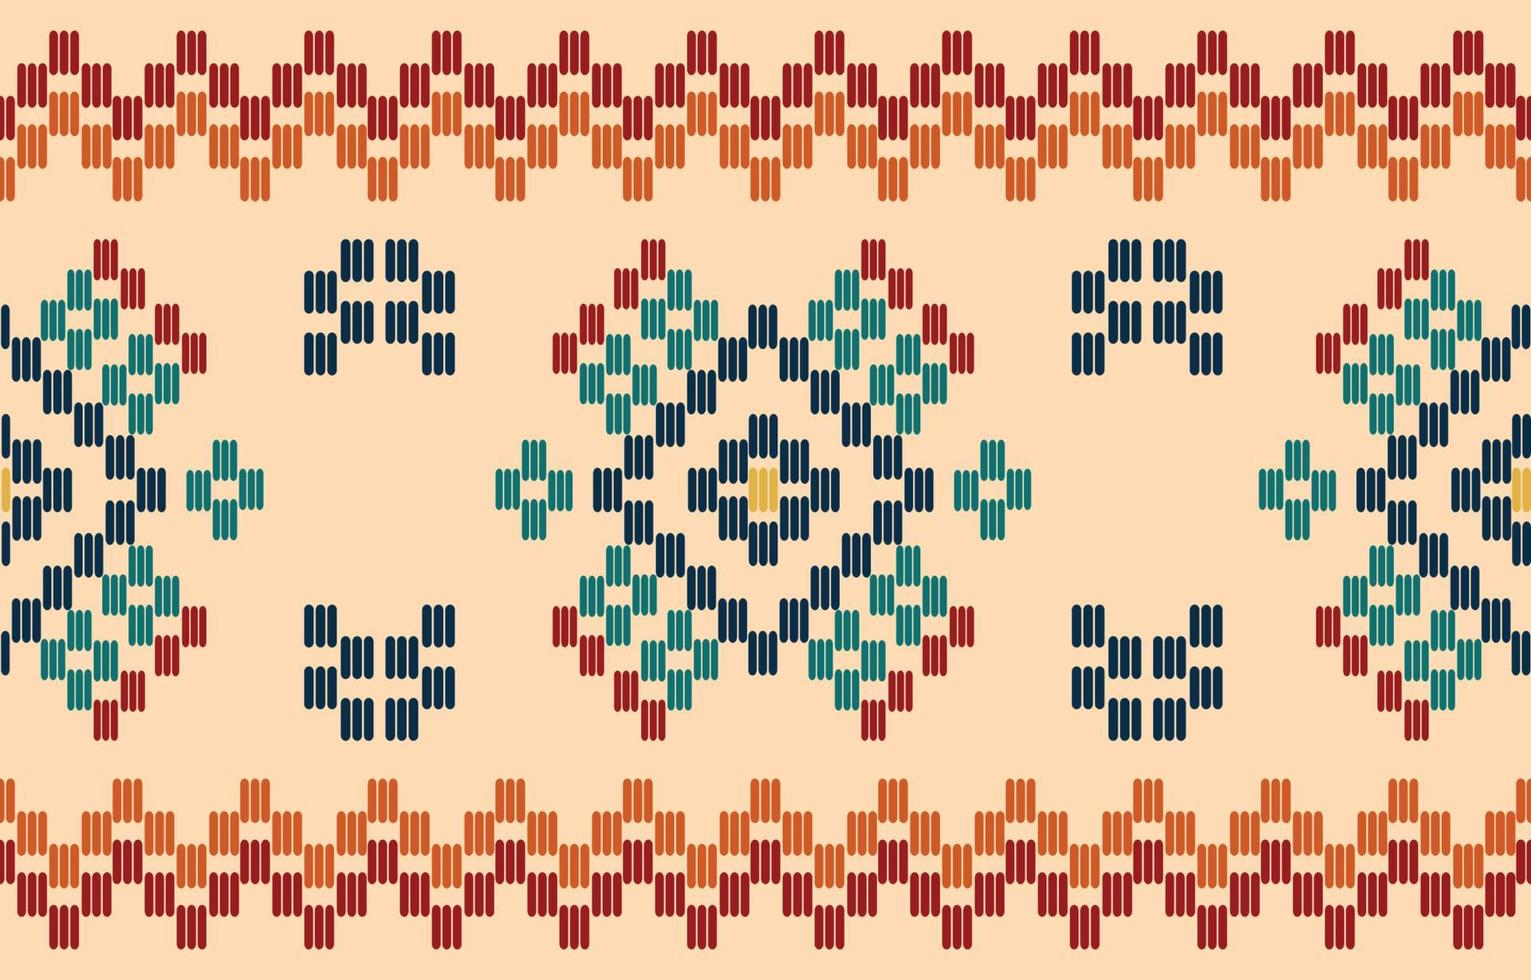 borda artesanal bela arte. padrão navajo sem costura em tribal, bordado popular, impressão de ornamento de arte geométrica asteca mexicana. design para tapete, papel de parede, roupas, embrulho, tecido, capa, têxtil vetor